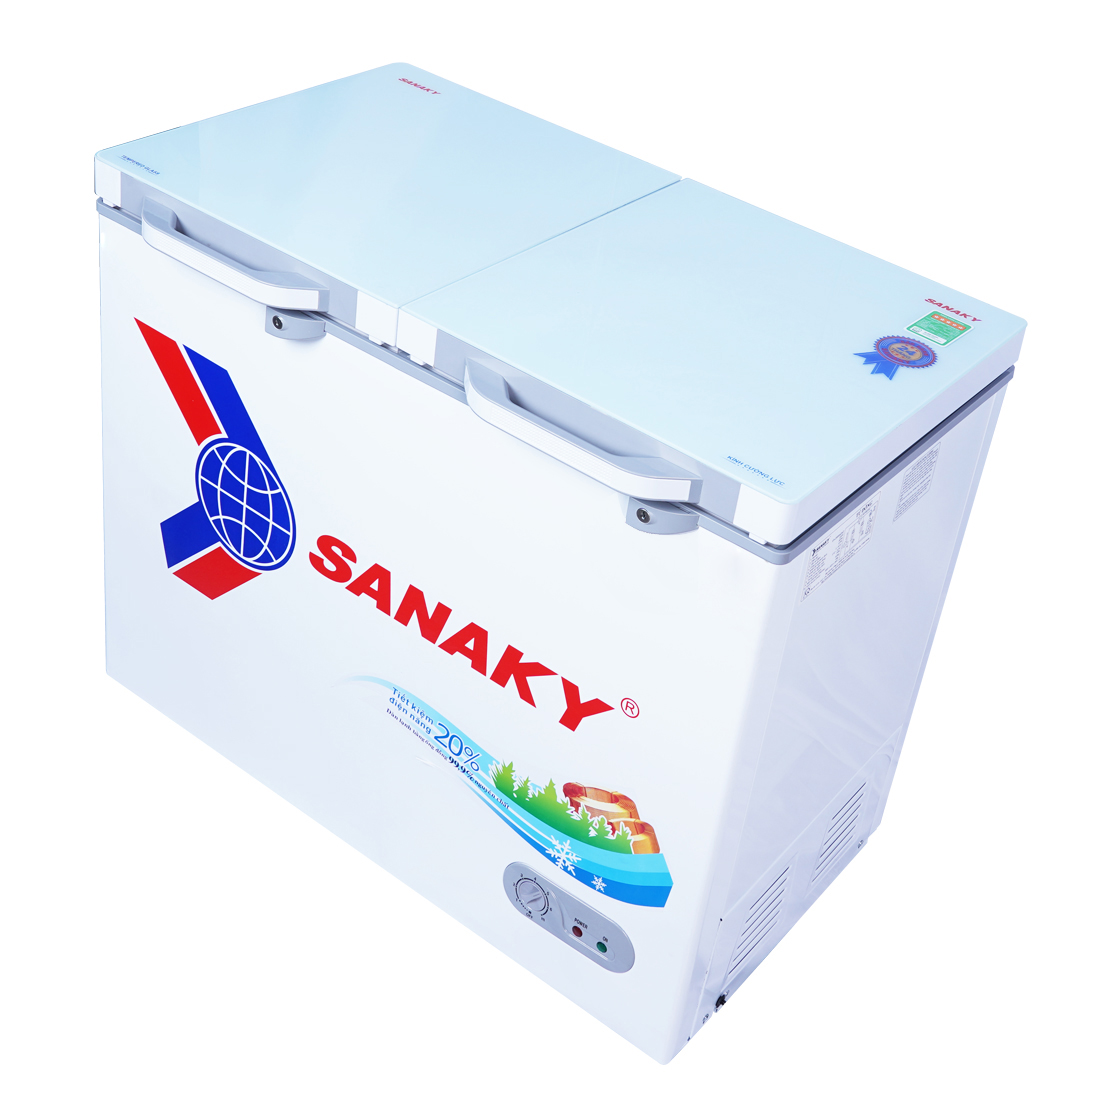 Tủ Đông mặt kính cường lực Sanaky VH-2599A2KD